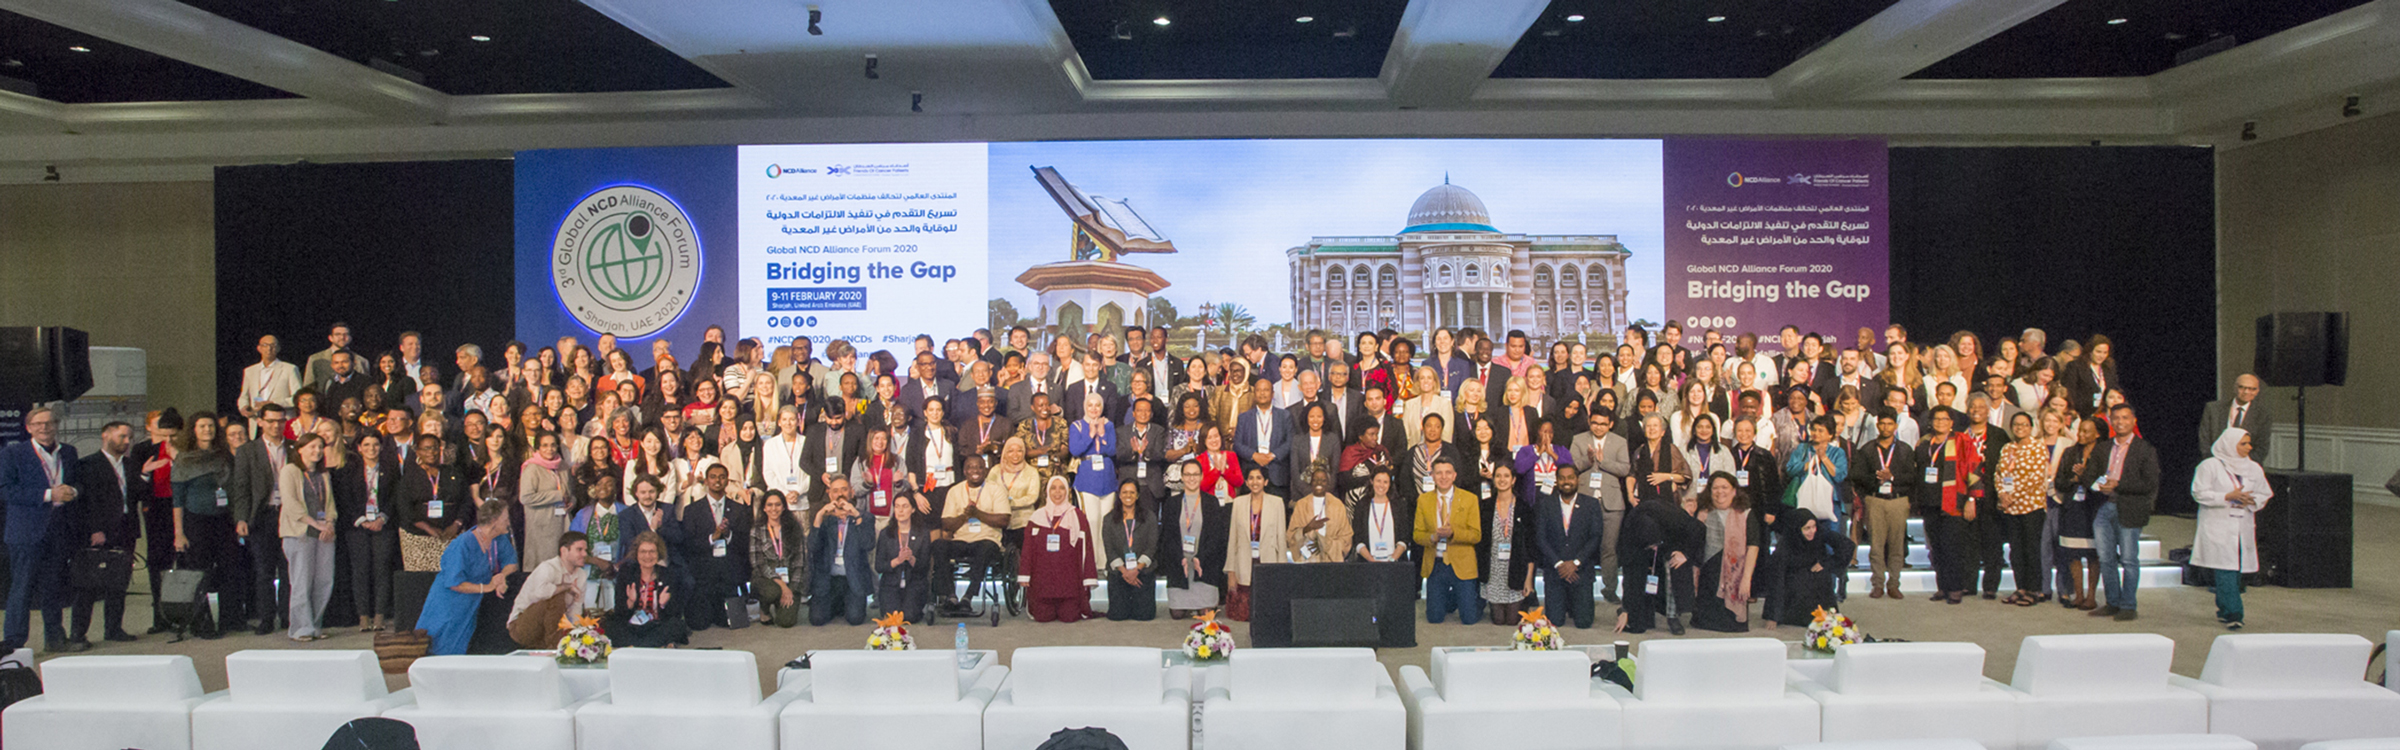 2020 Global Forum participants